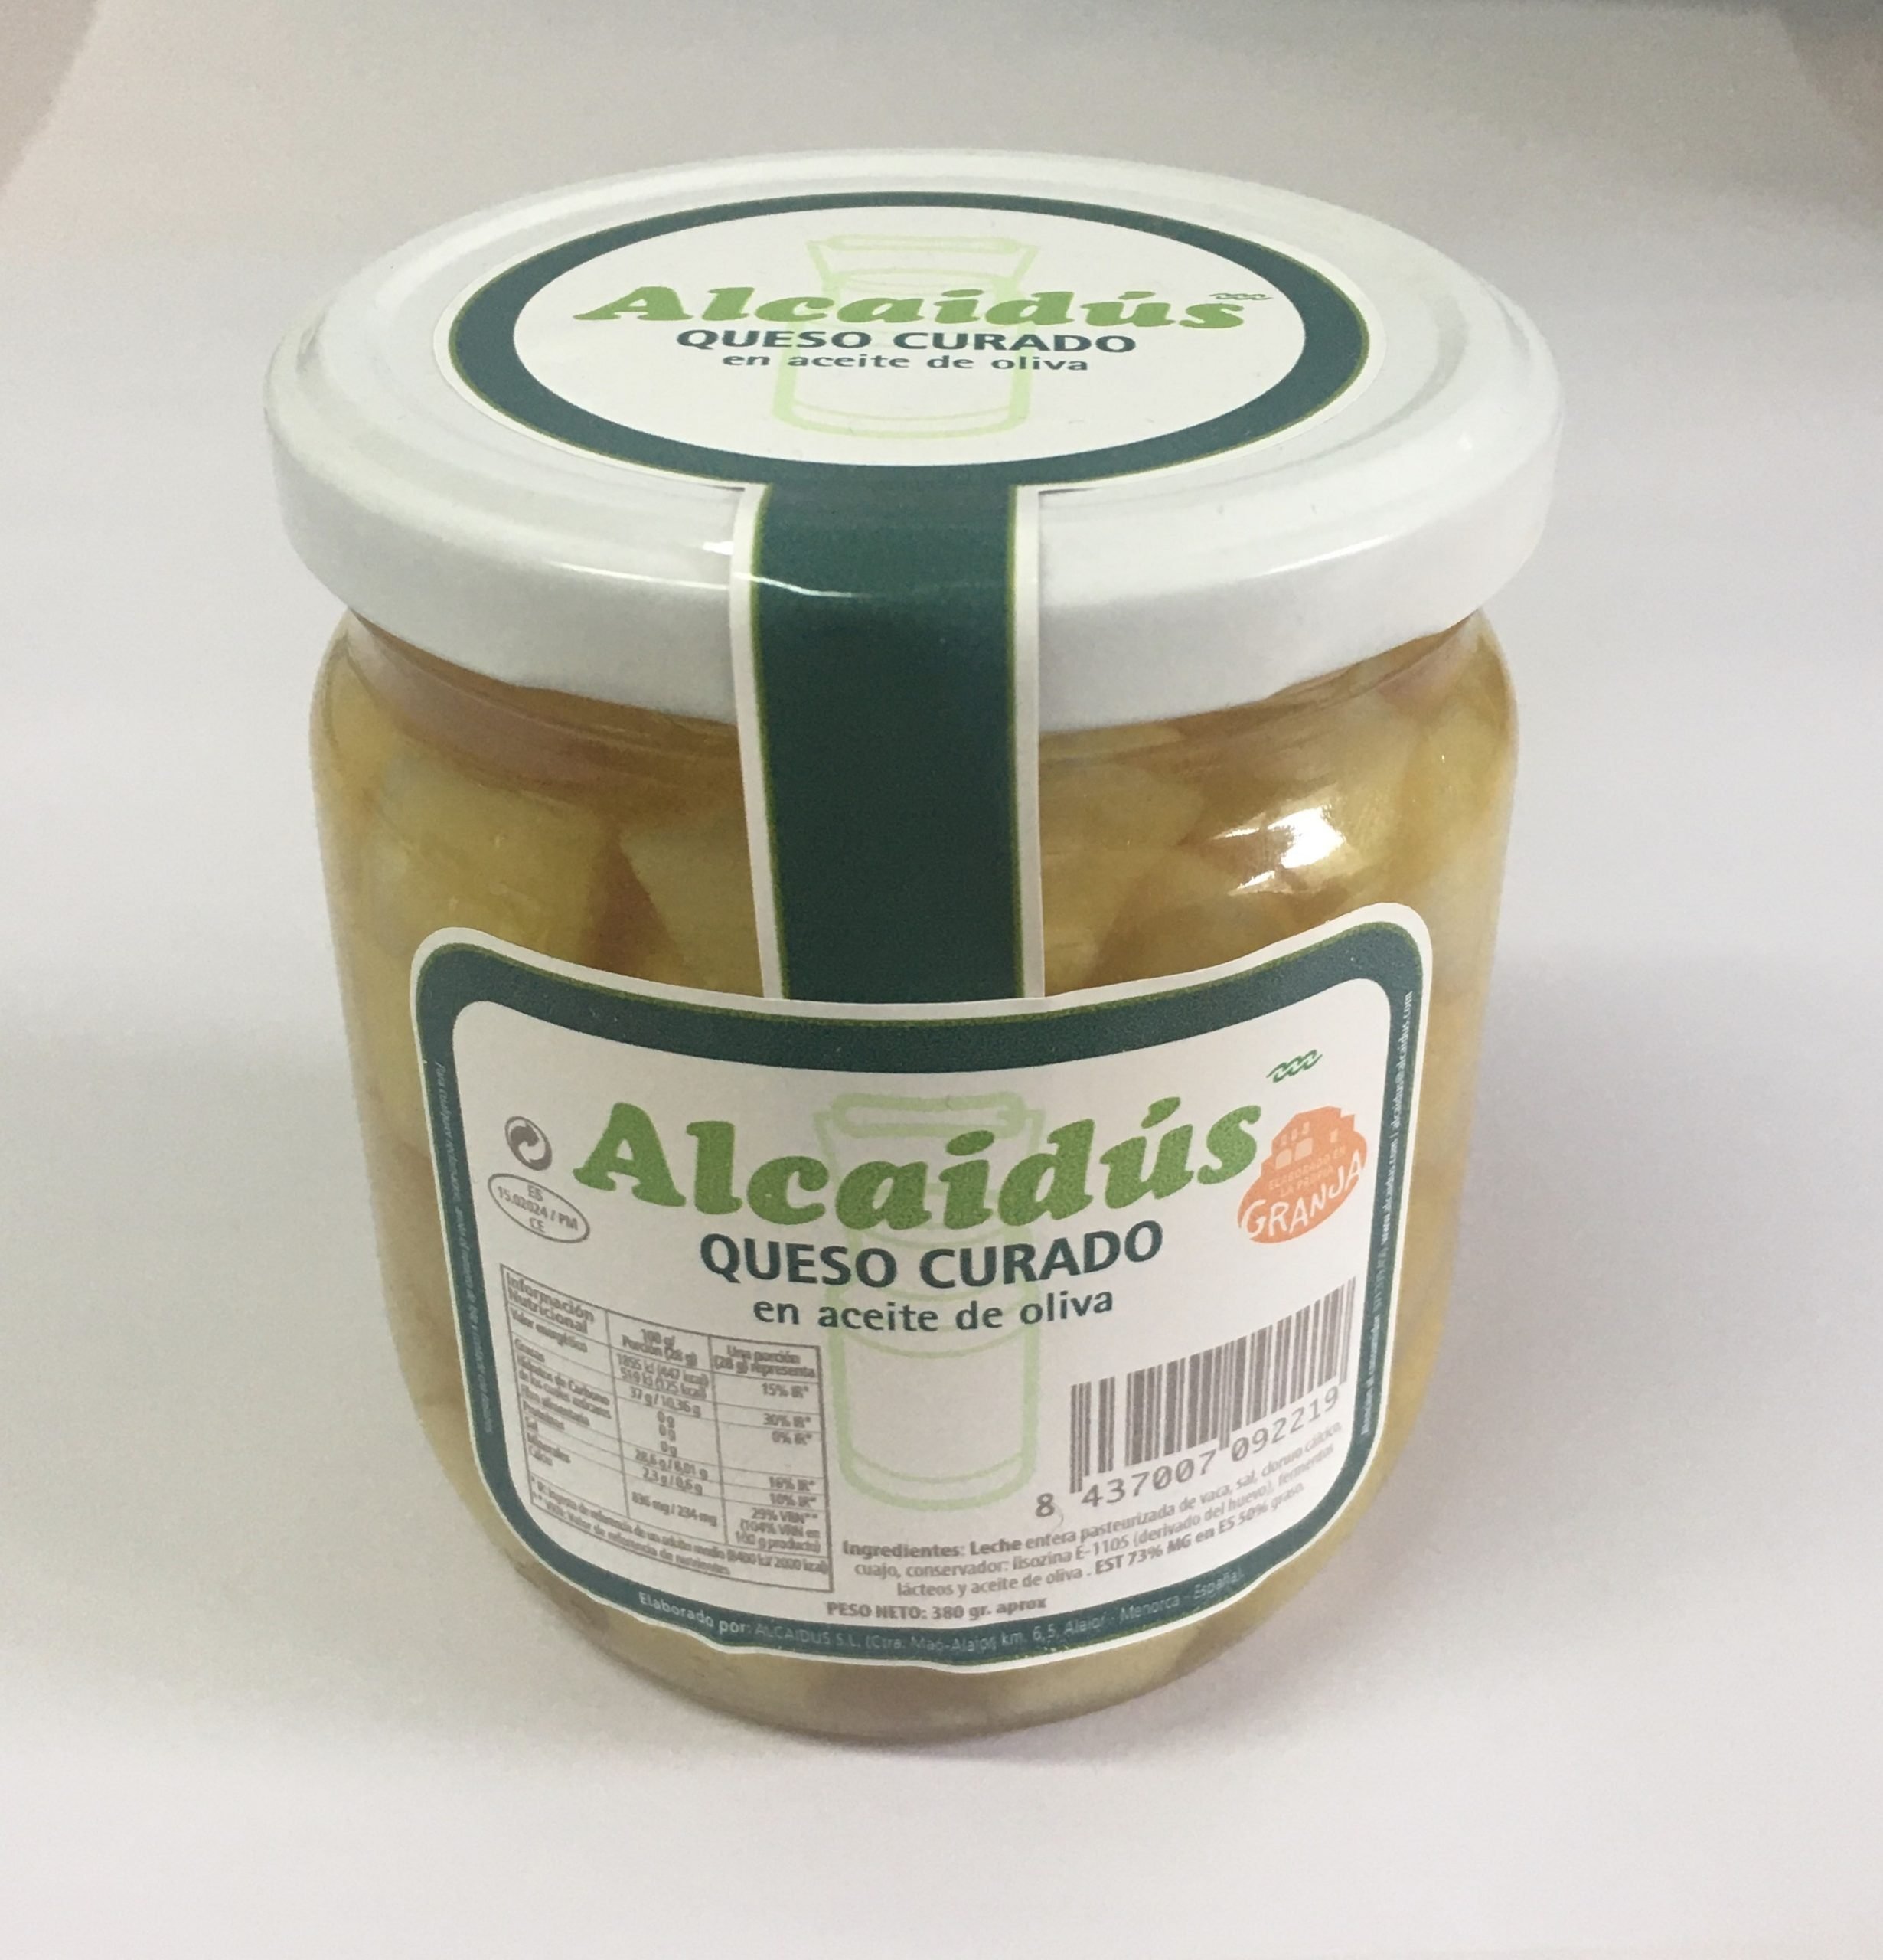 Tacos de queso curado Alcaidús en aceite de oliva. NUEVO PRODUCTO*